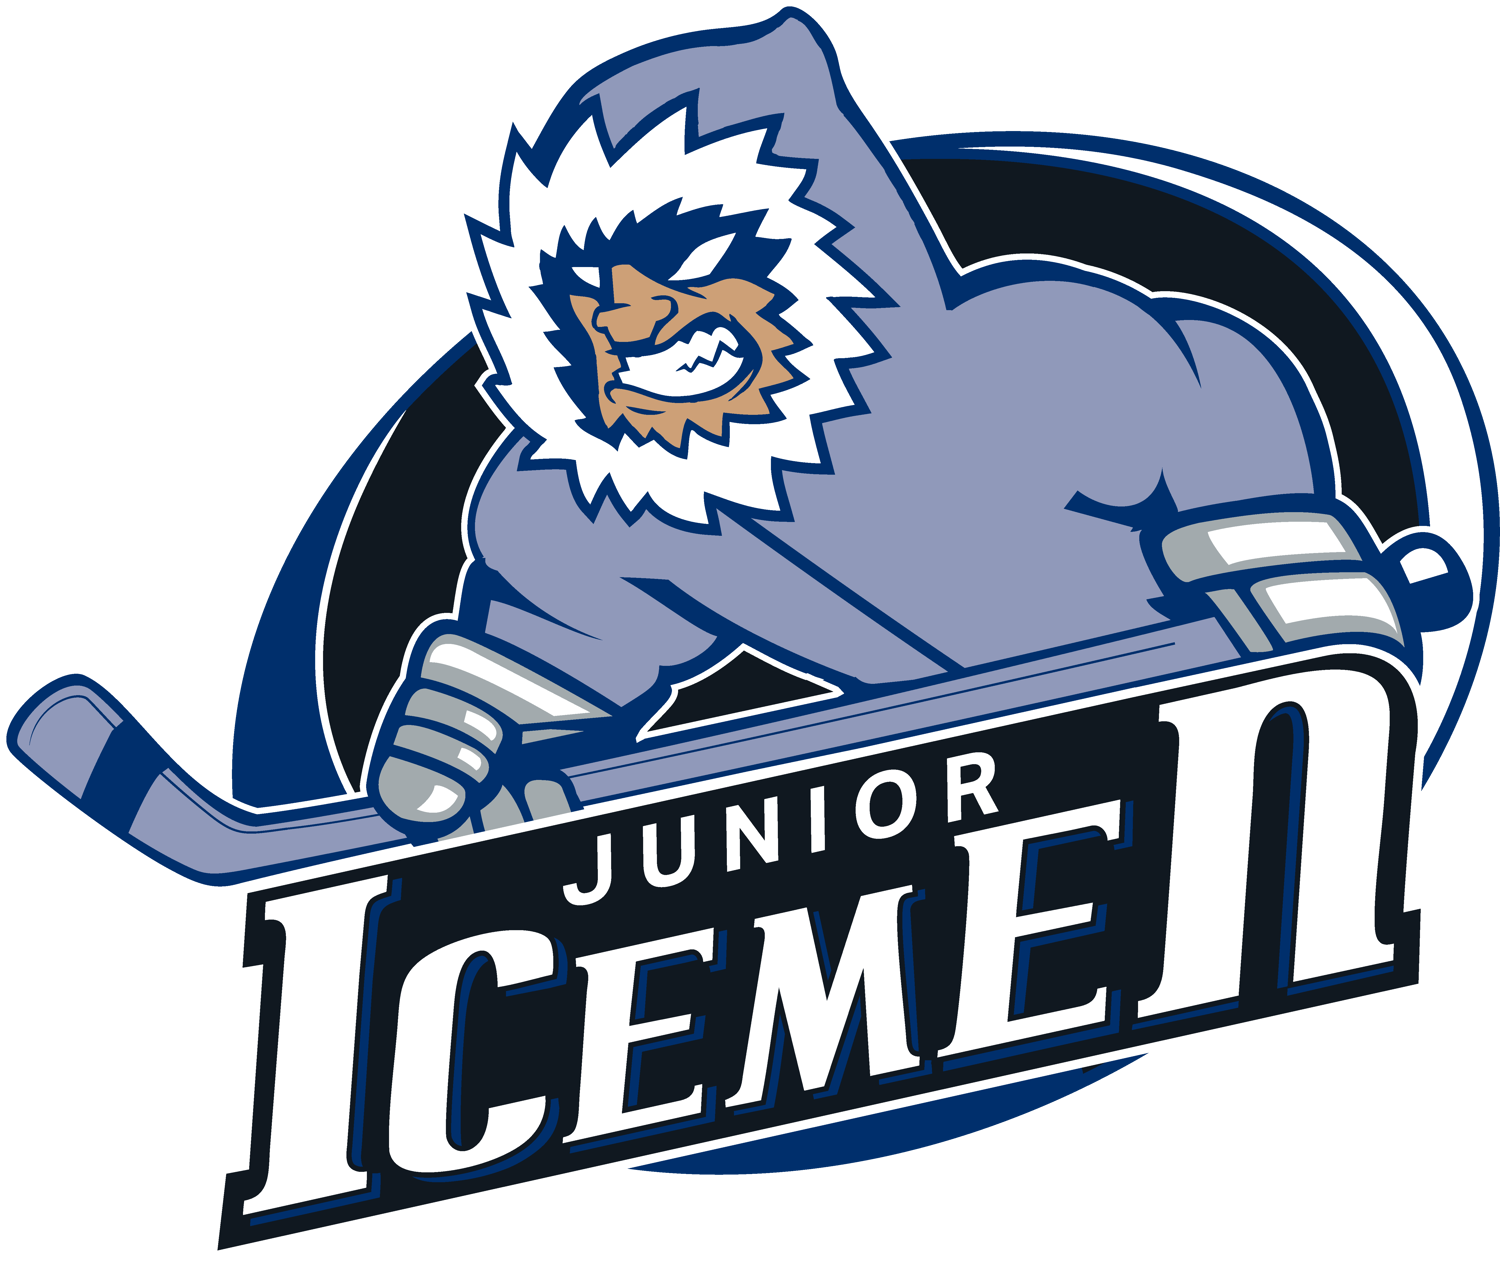 Junior Icemen